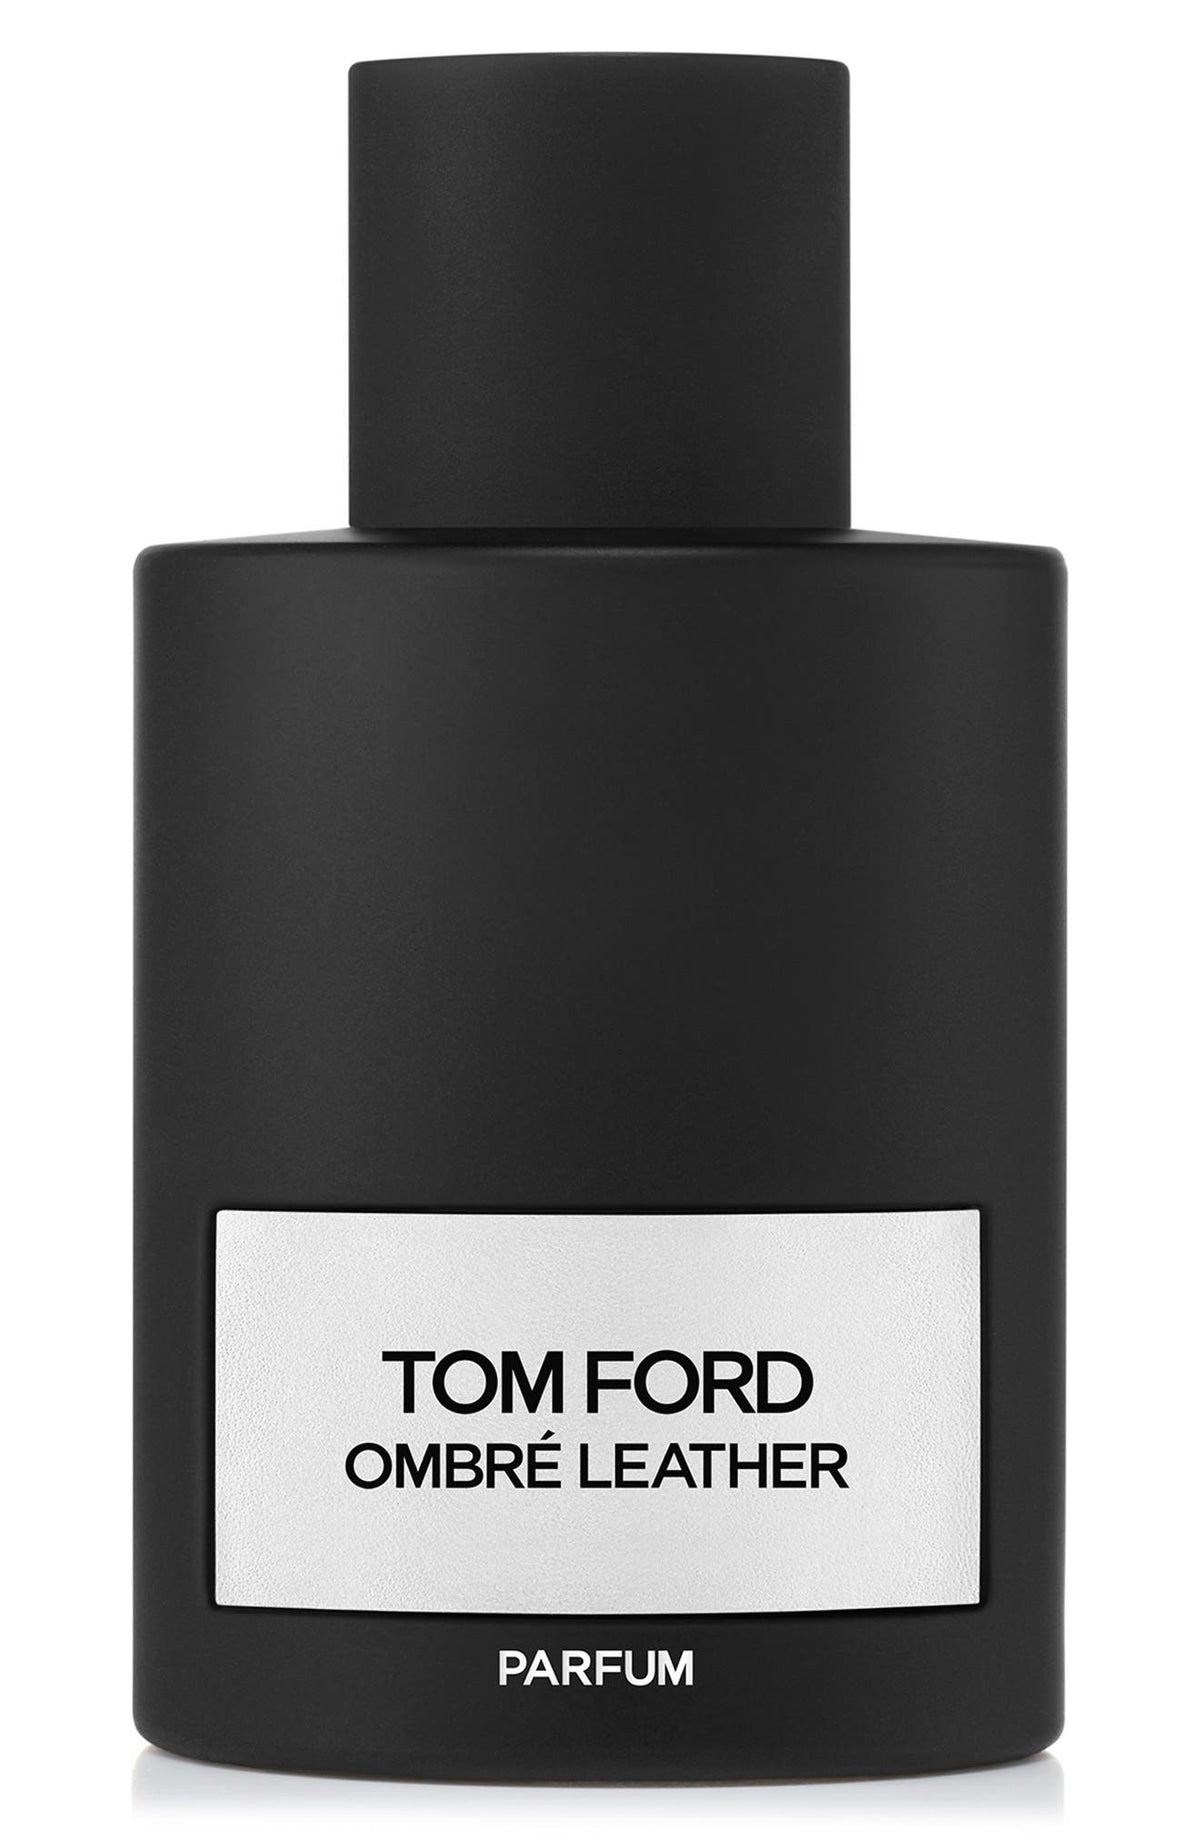 TOM FORD Ombré Leather Parfum Spray 3.4 oz